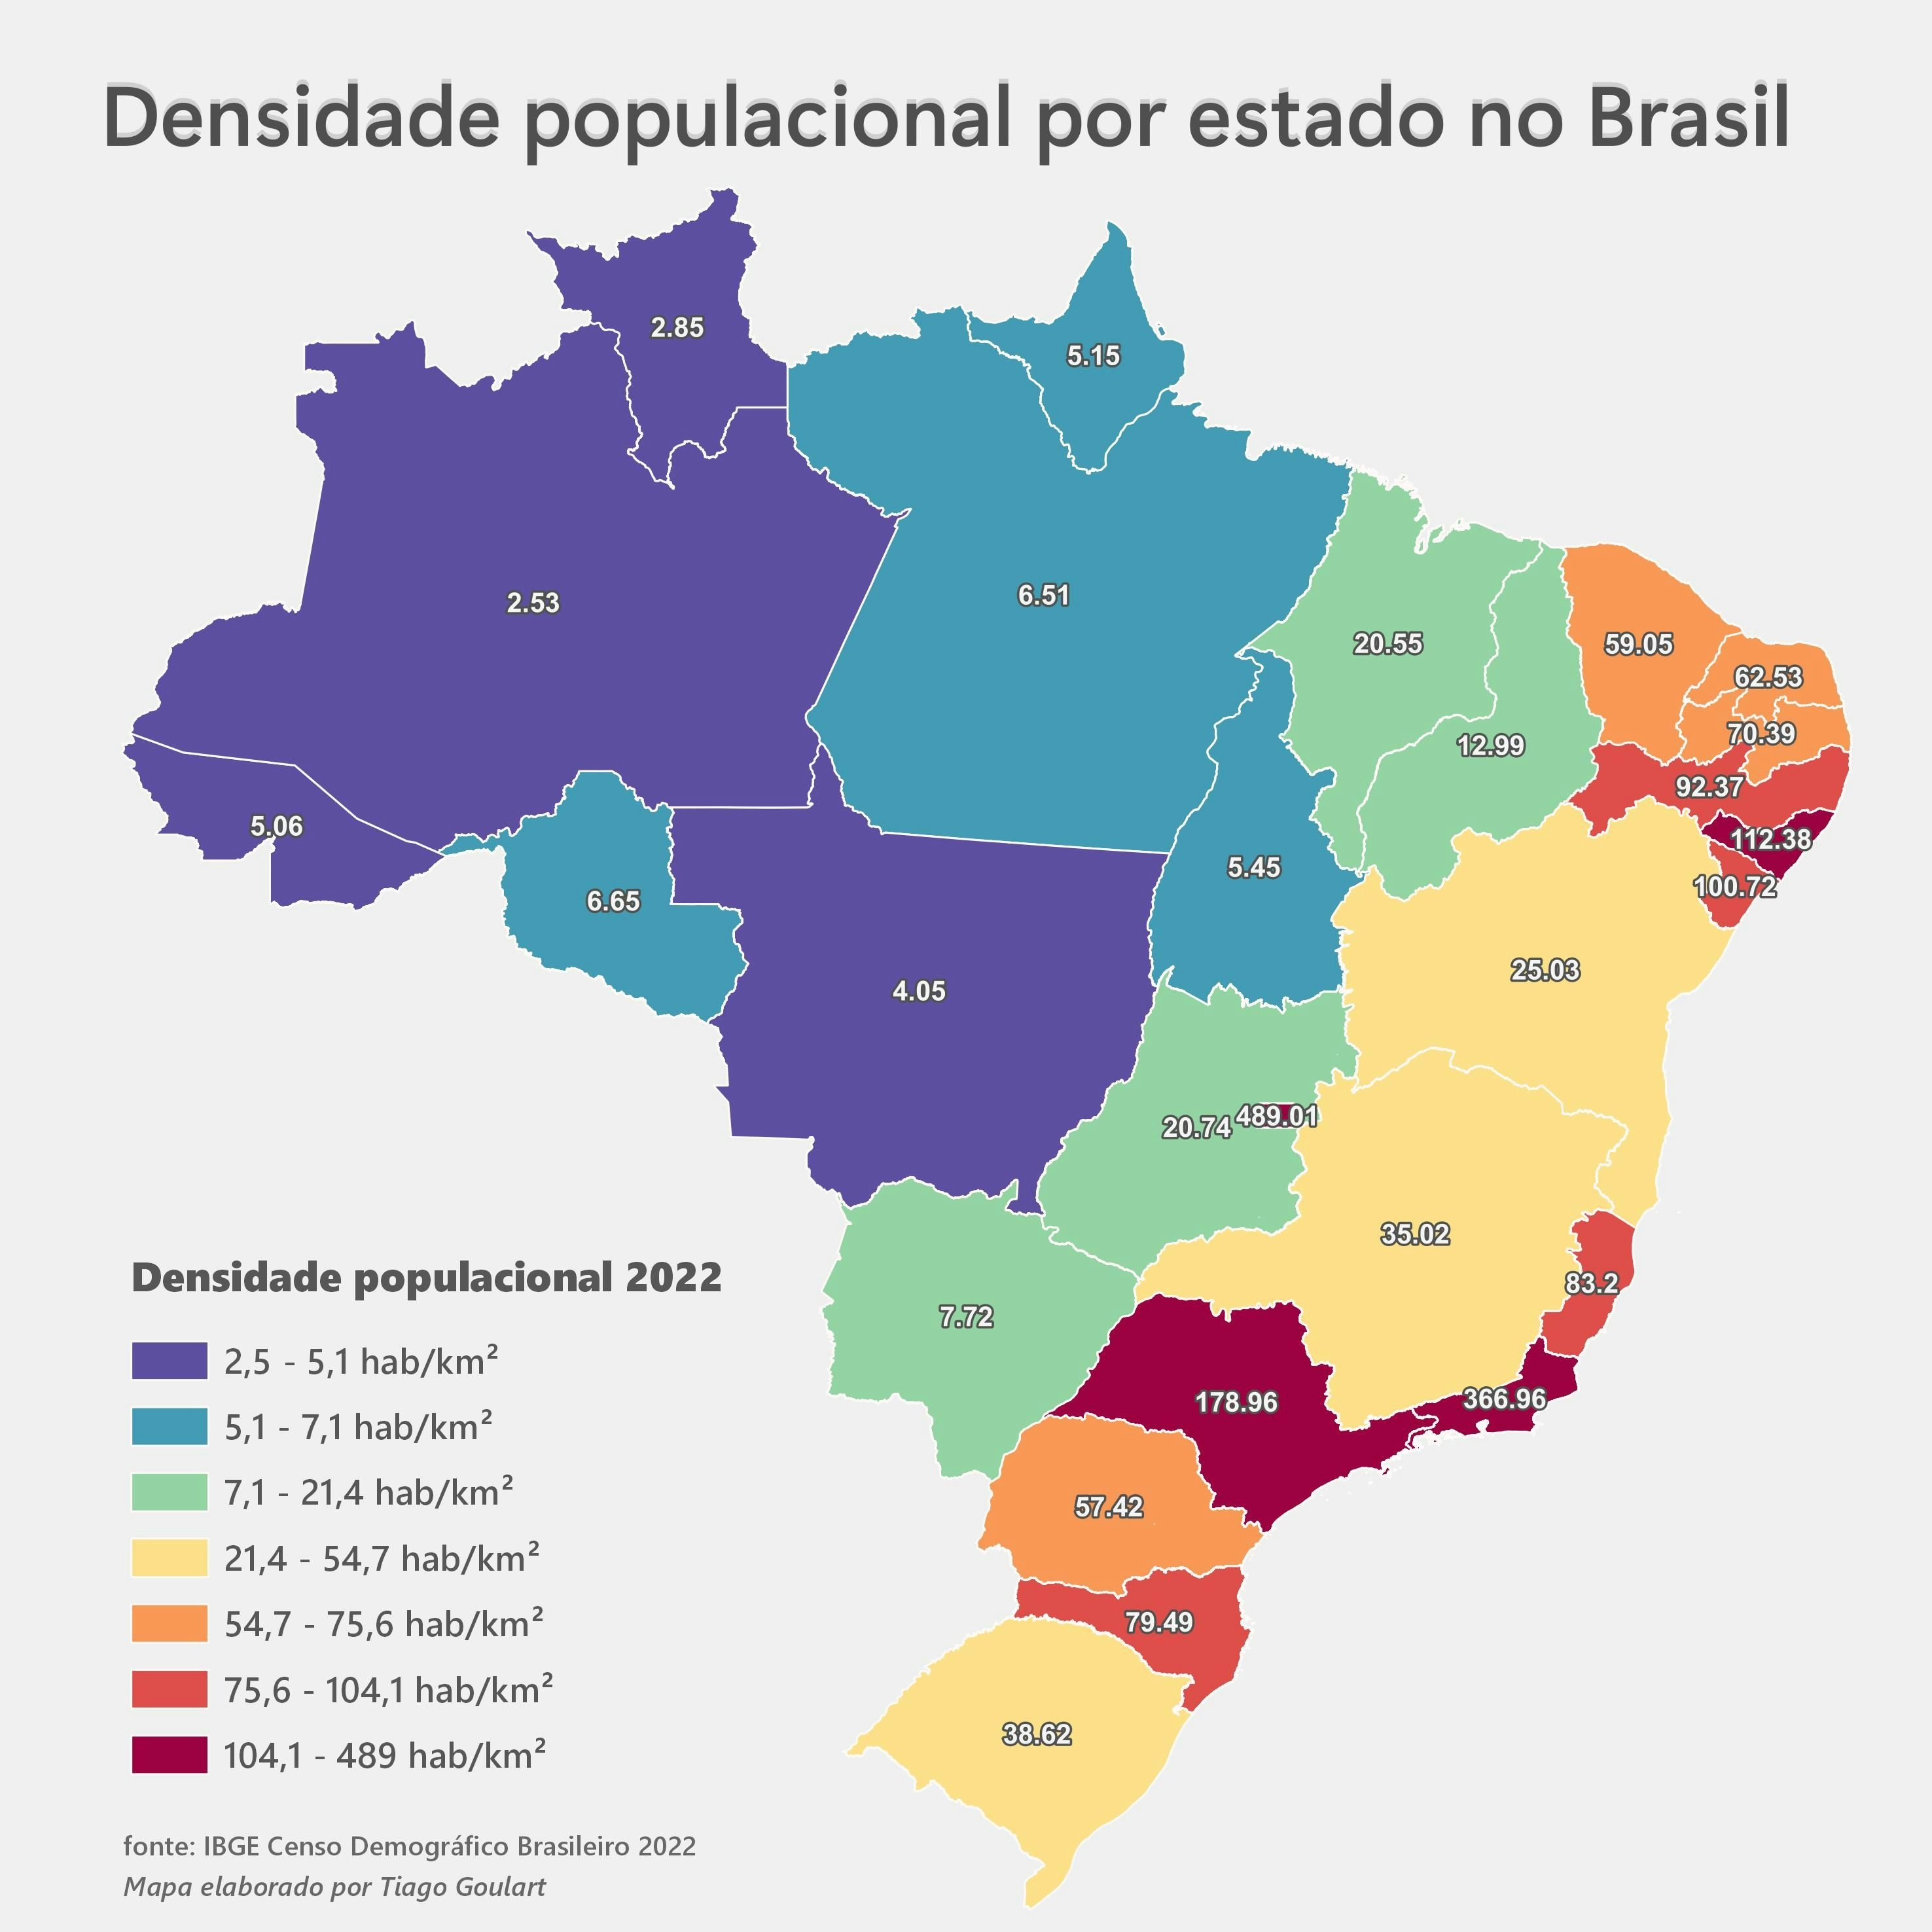 Pop Density by State in Brazil in 2022